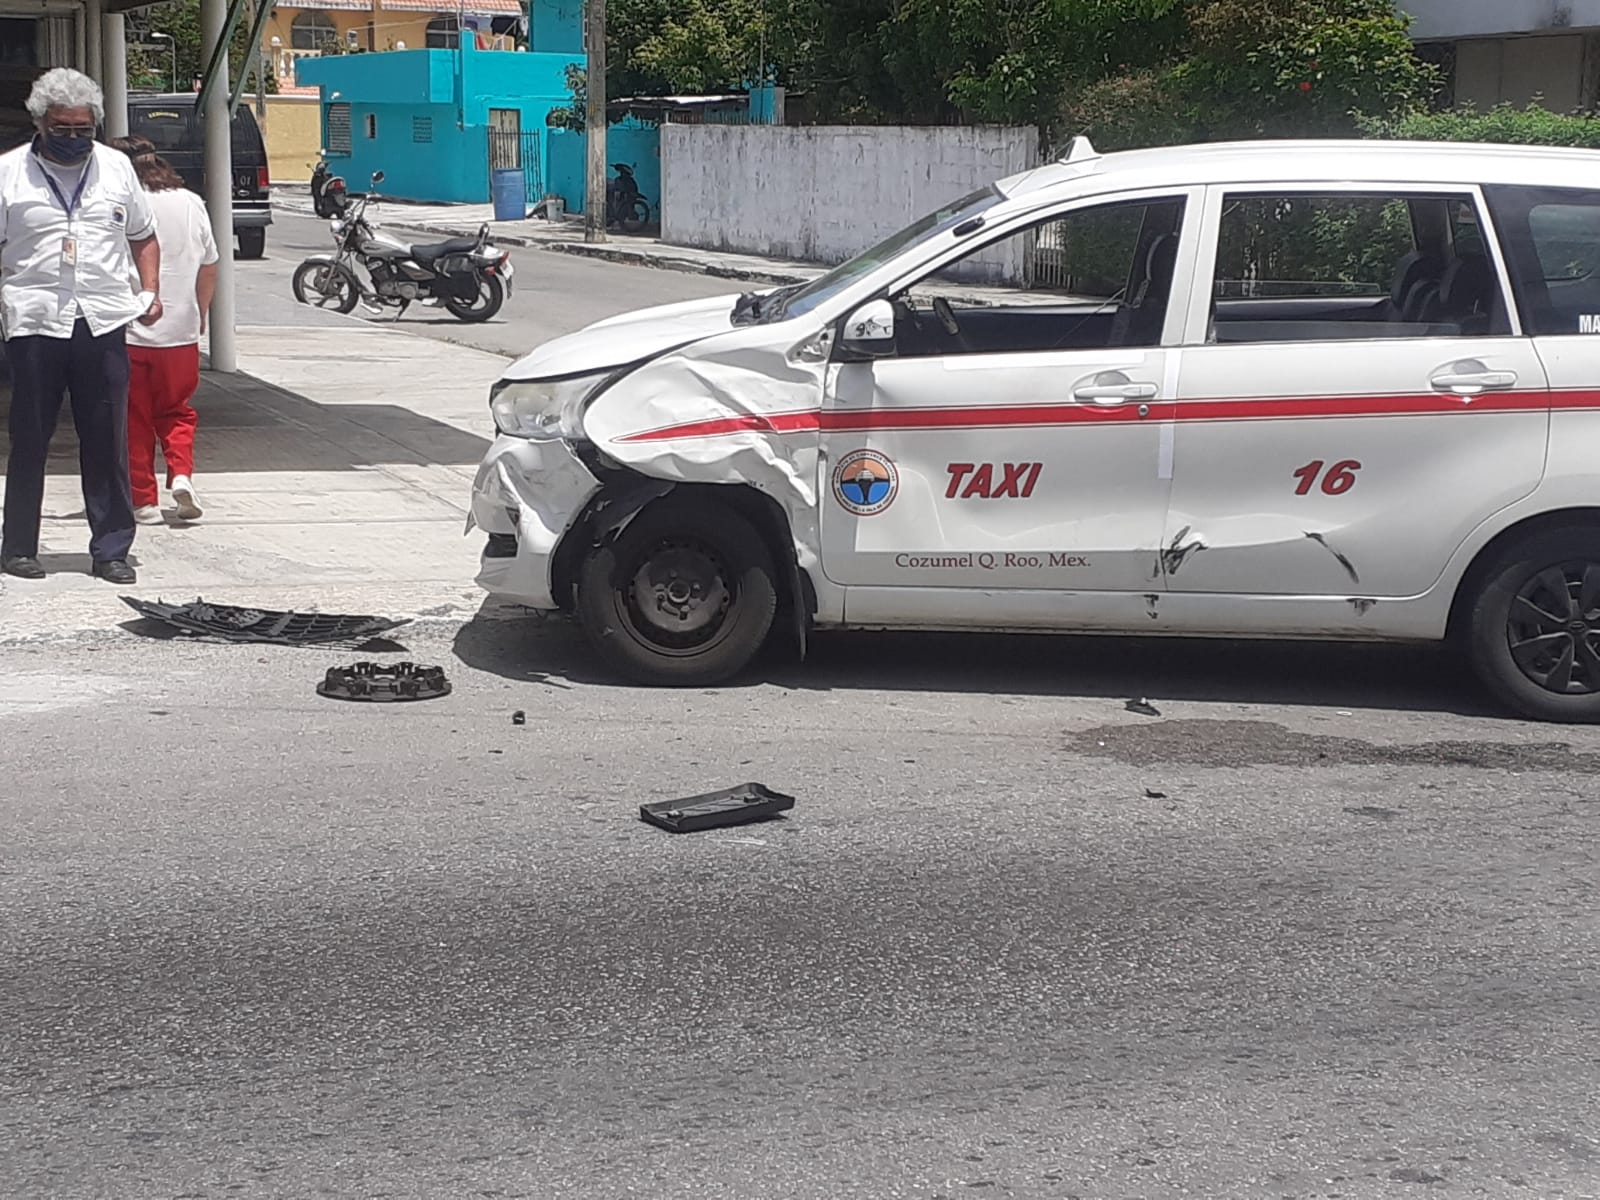 Camioneta Jeep provoca aparatoso accidente contra un taxi en Cozumel